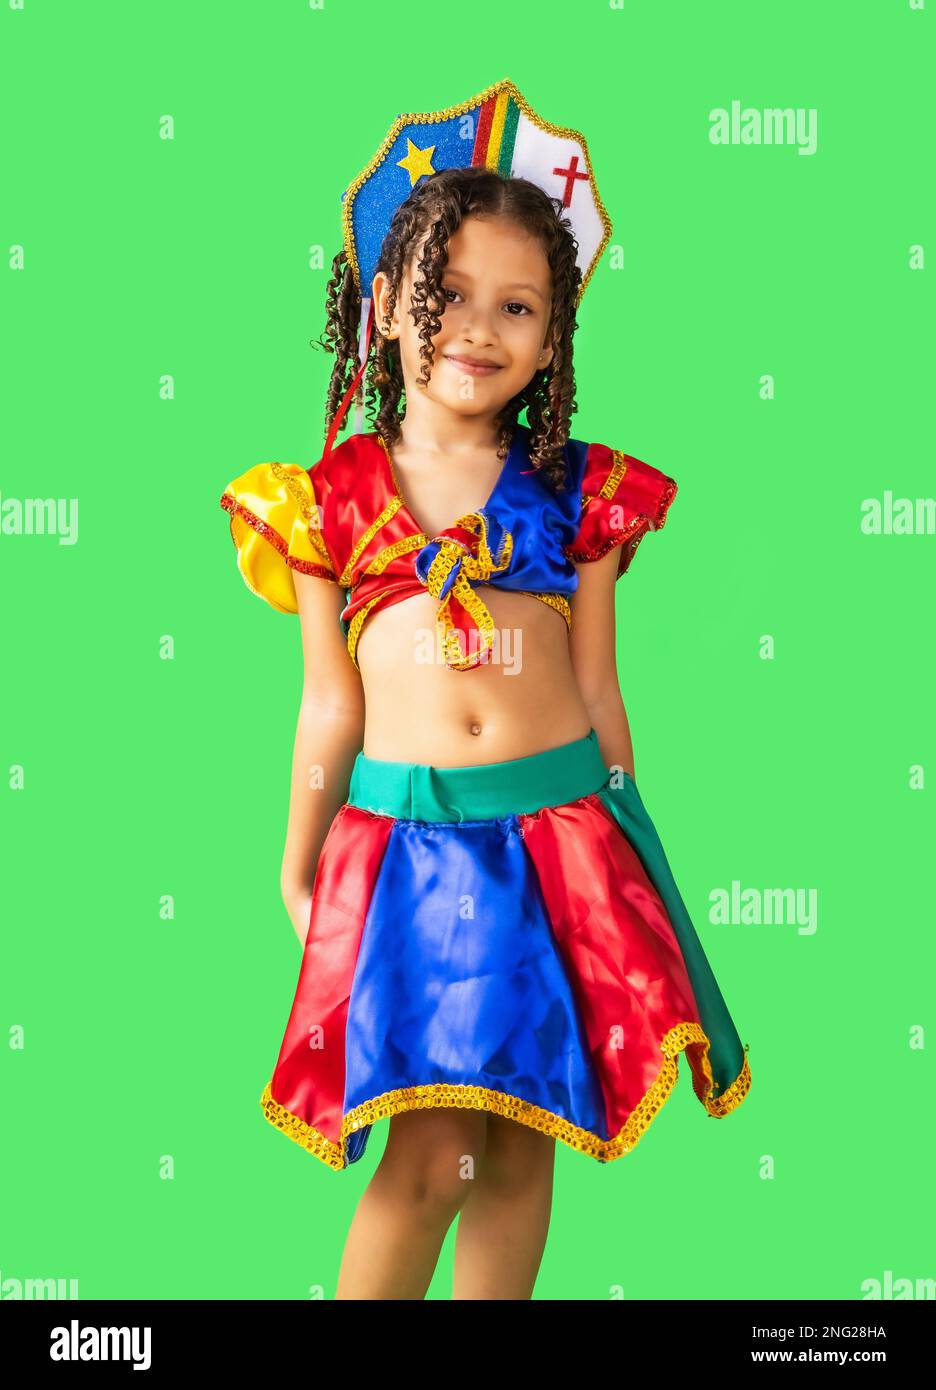 Brasilianisches Mädchen, angezogen im Karnevalskostüm, tanzt mit Frevo-Regenschirm. Kleines Mädchen, brasilianerin, mit Frevo-Kleidung, Karnevalskostüm, tanzender Frevo Stockfoto